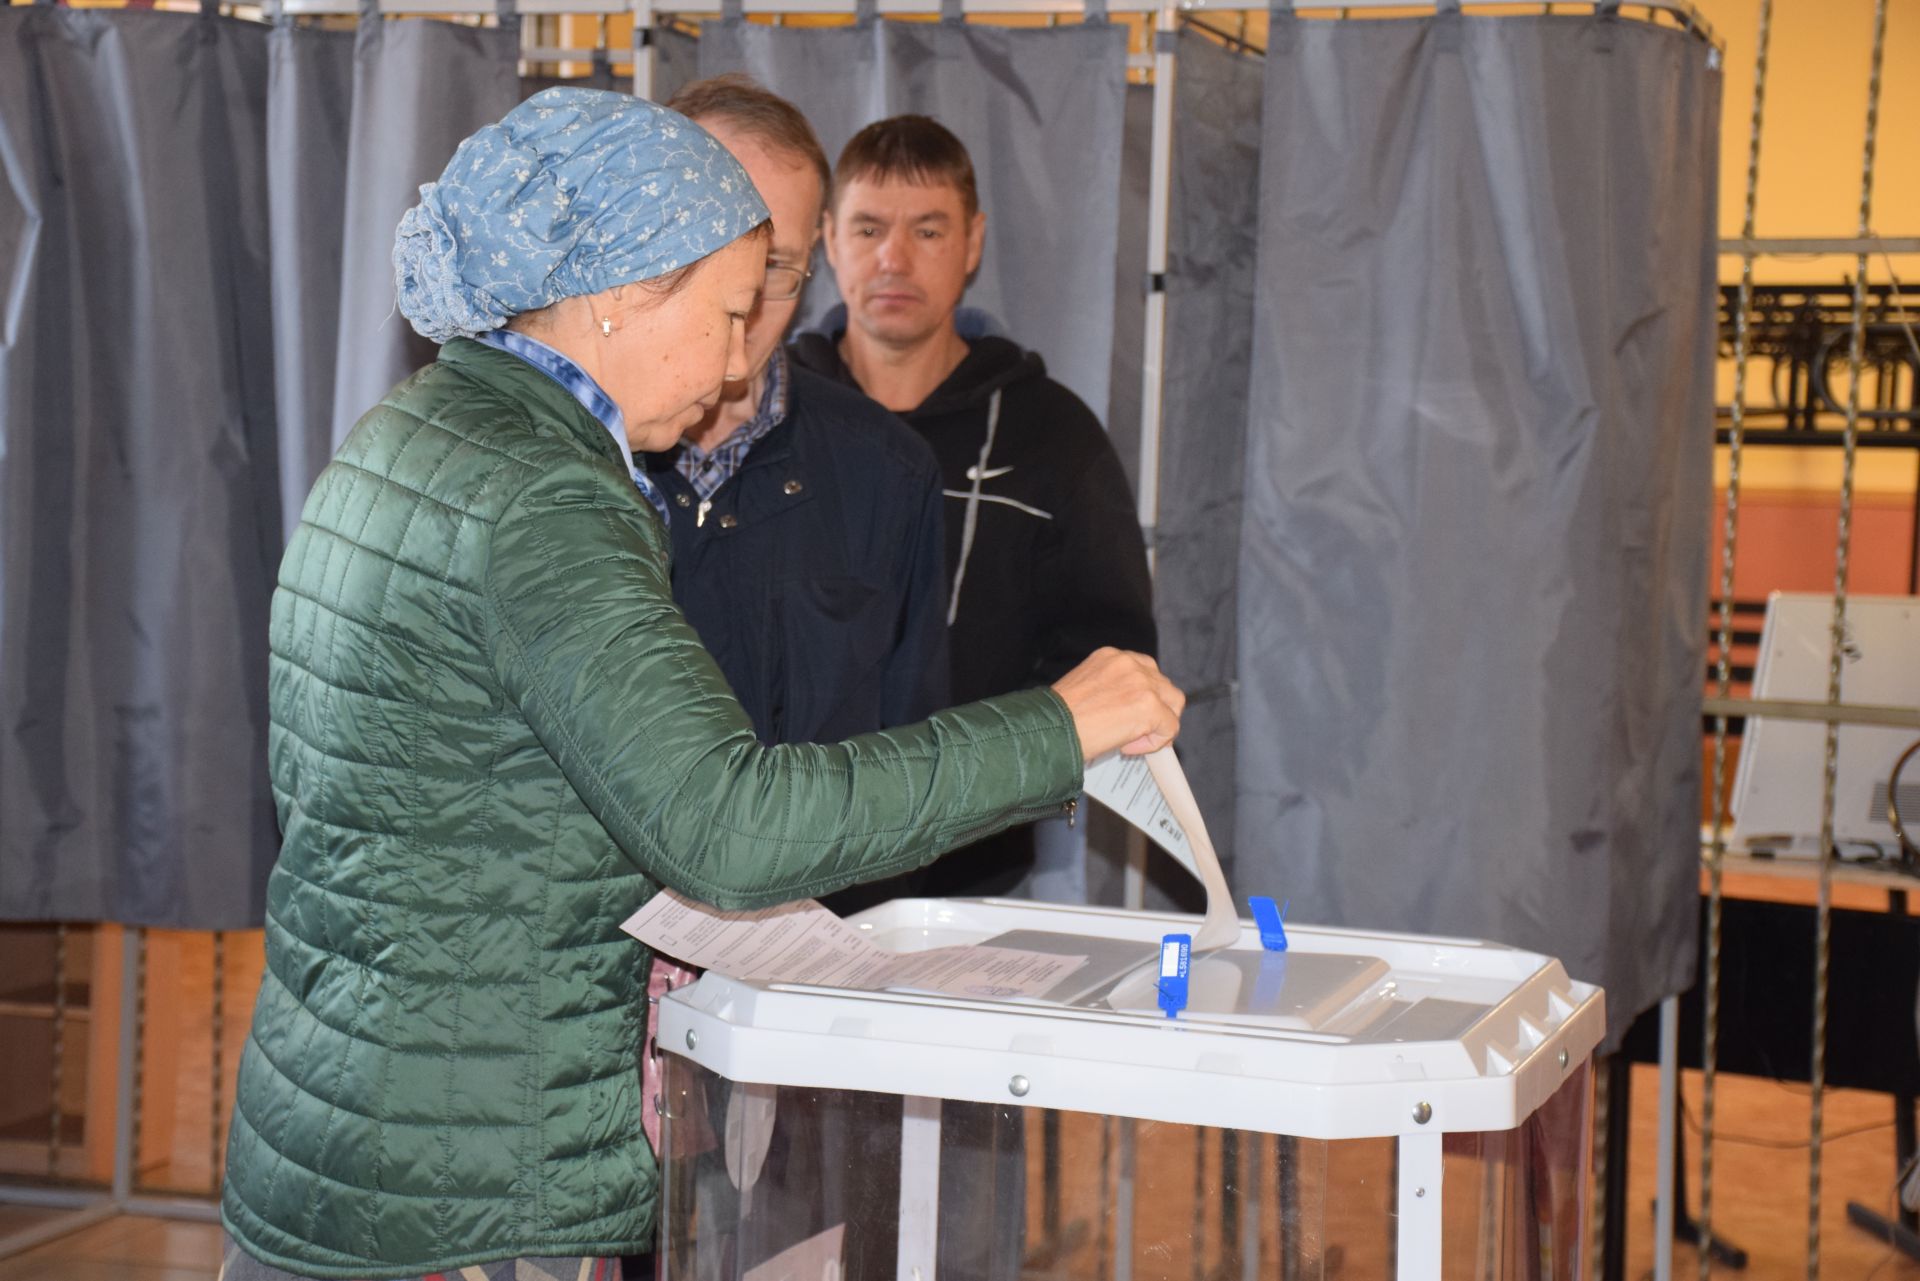 Глава Нурлатского района и города Нурлат Алмаз Ахметшин: «Нурлатцы всегда проявляли активность в выборах, думаю, что сегодня будет также»